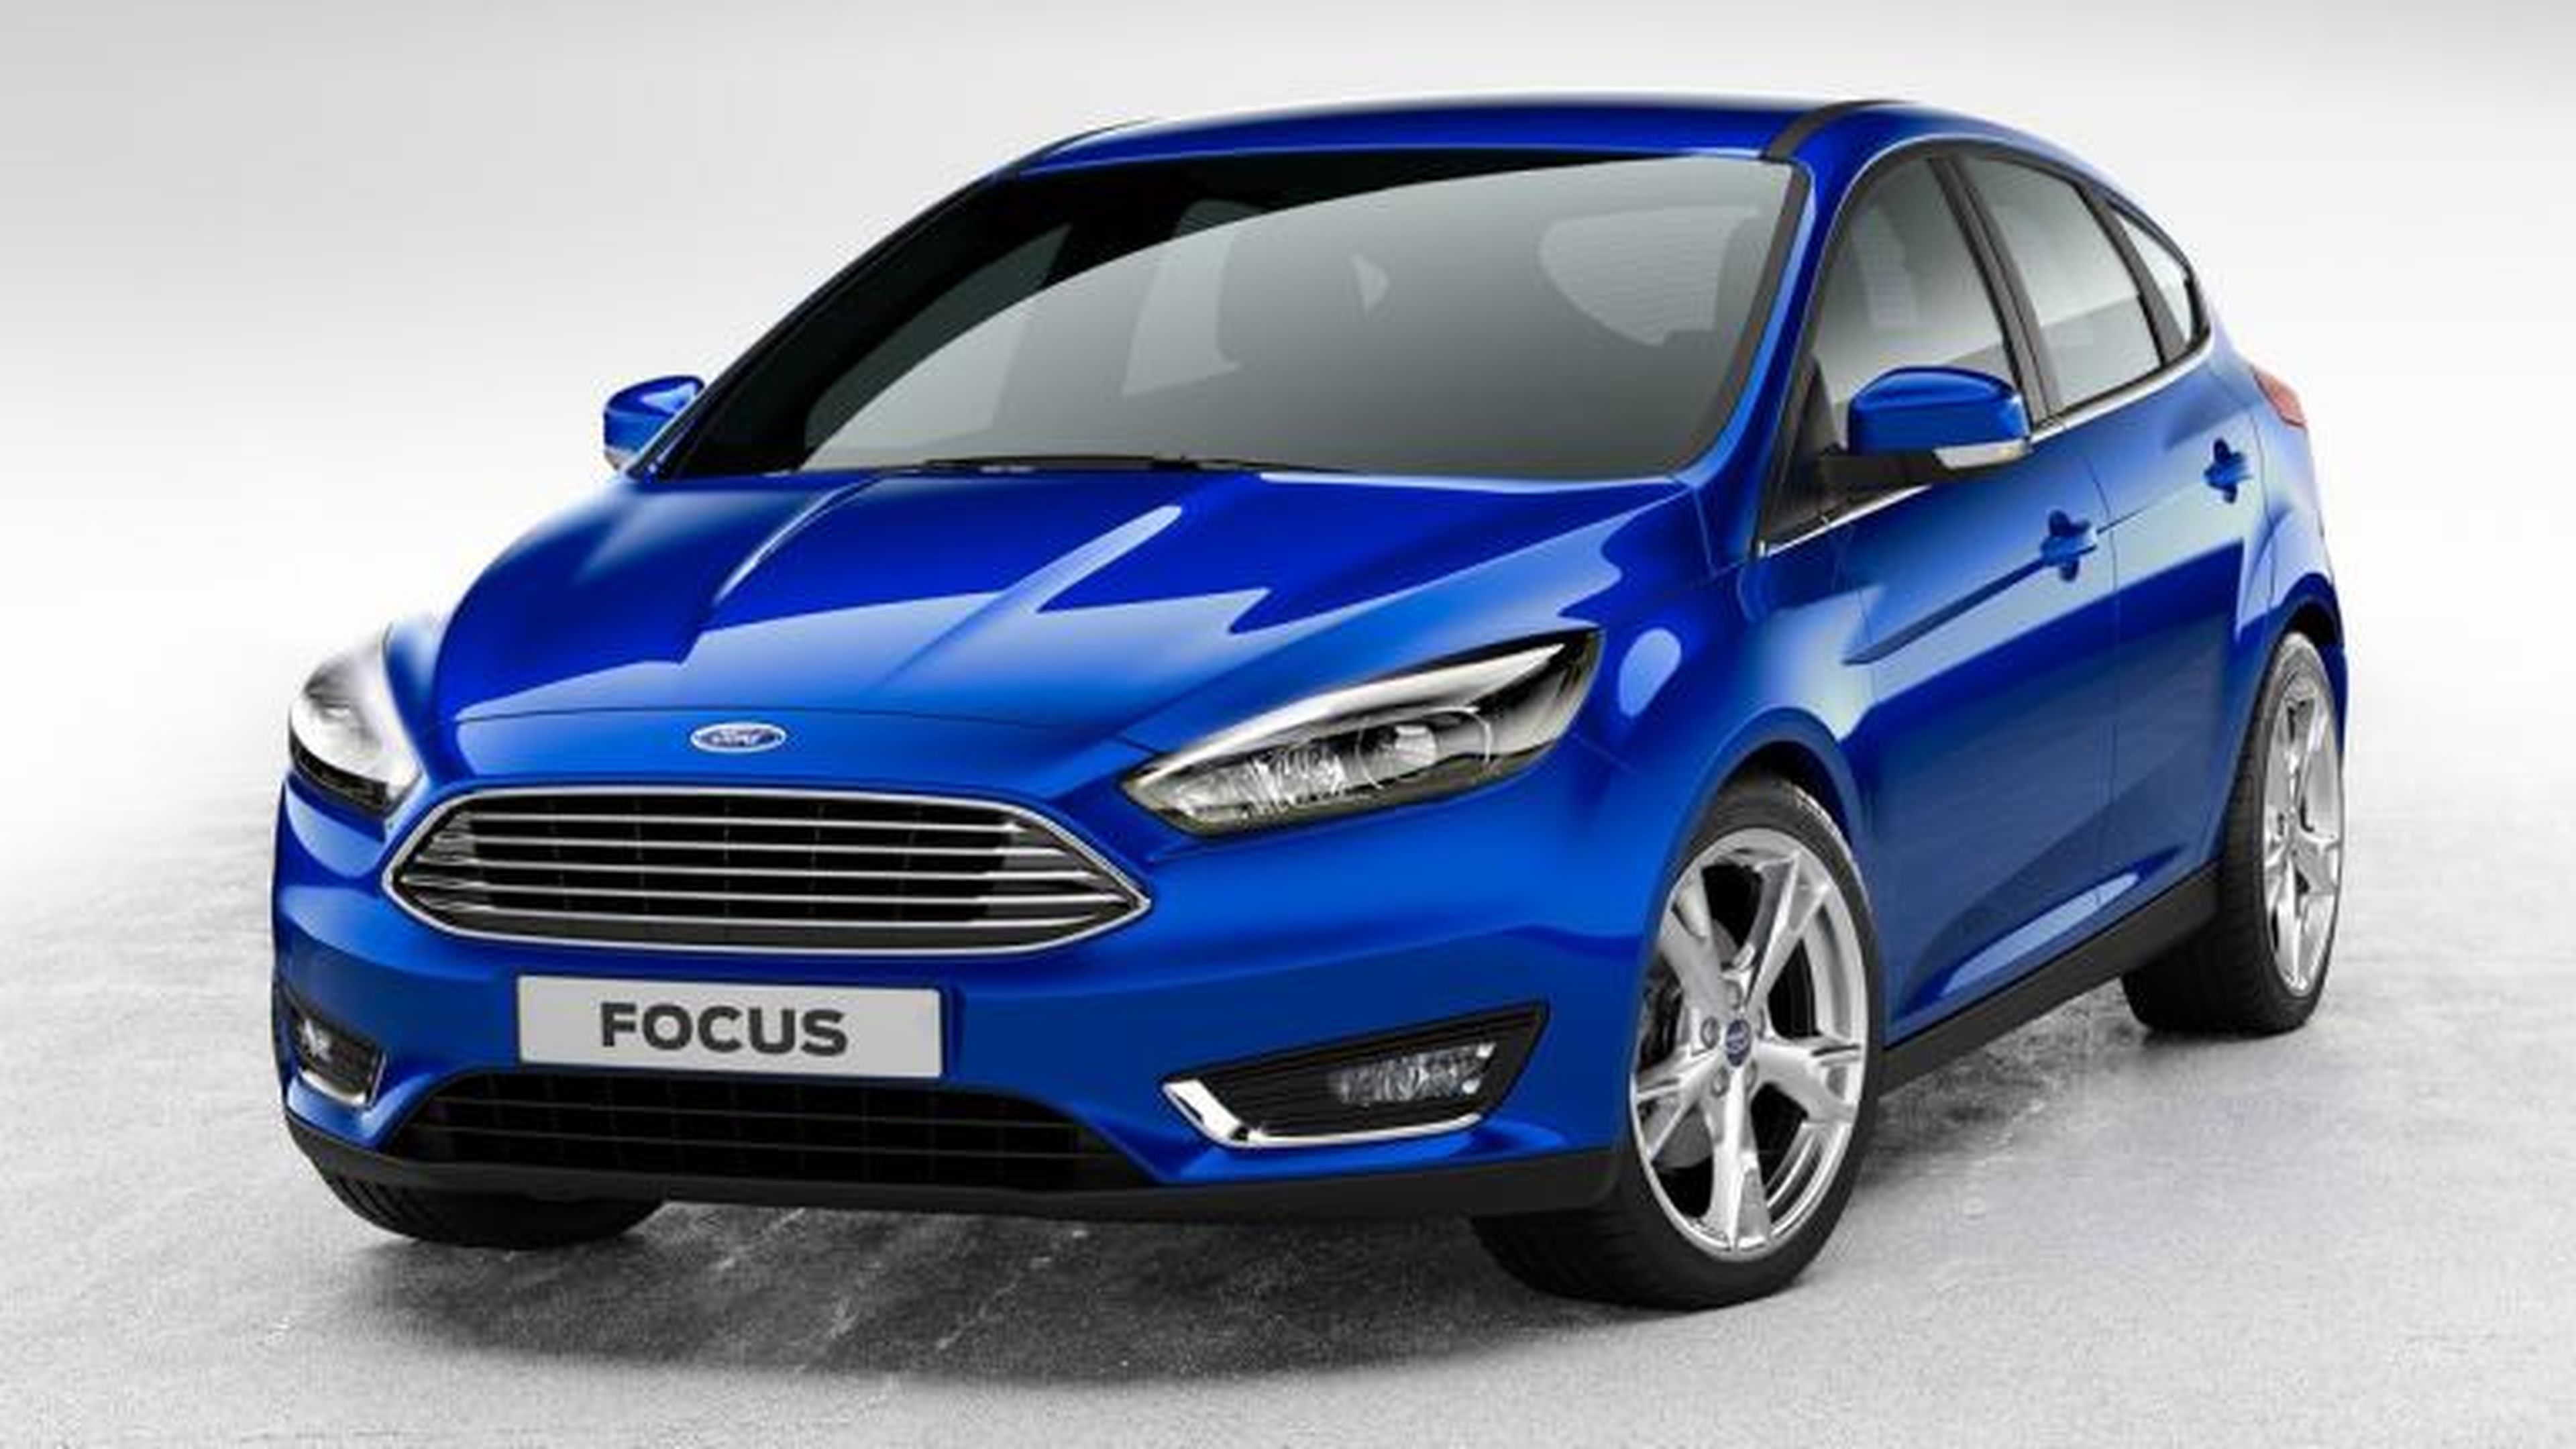 Ford Focus km 0: precios